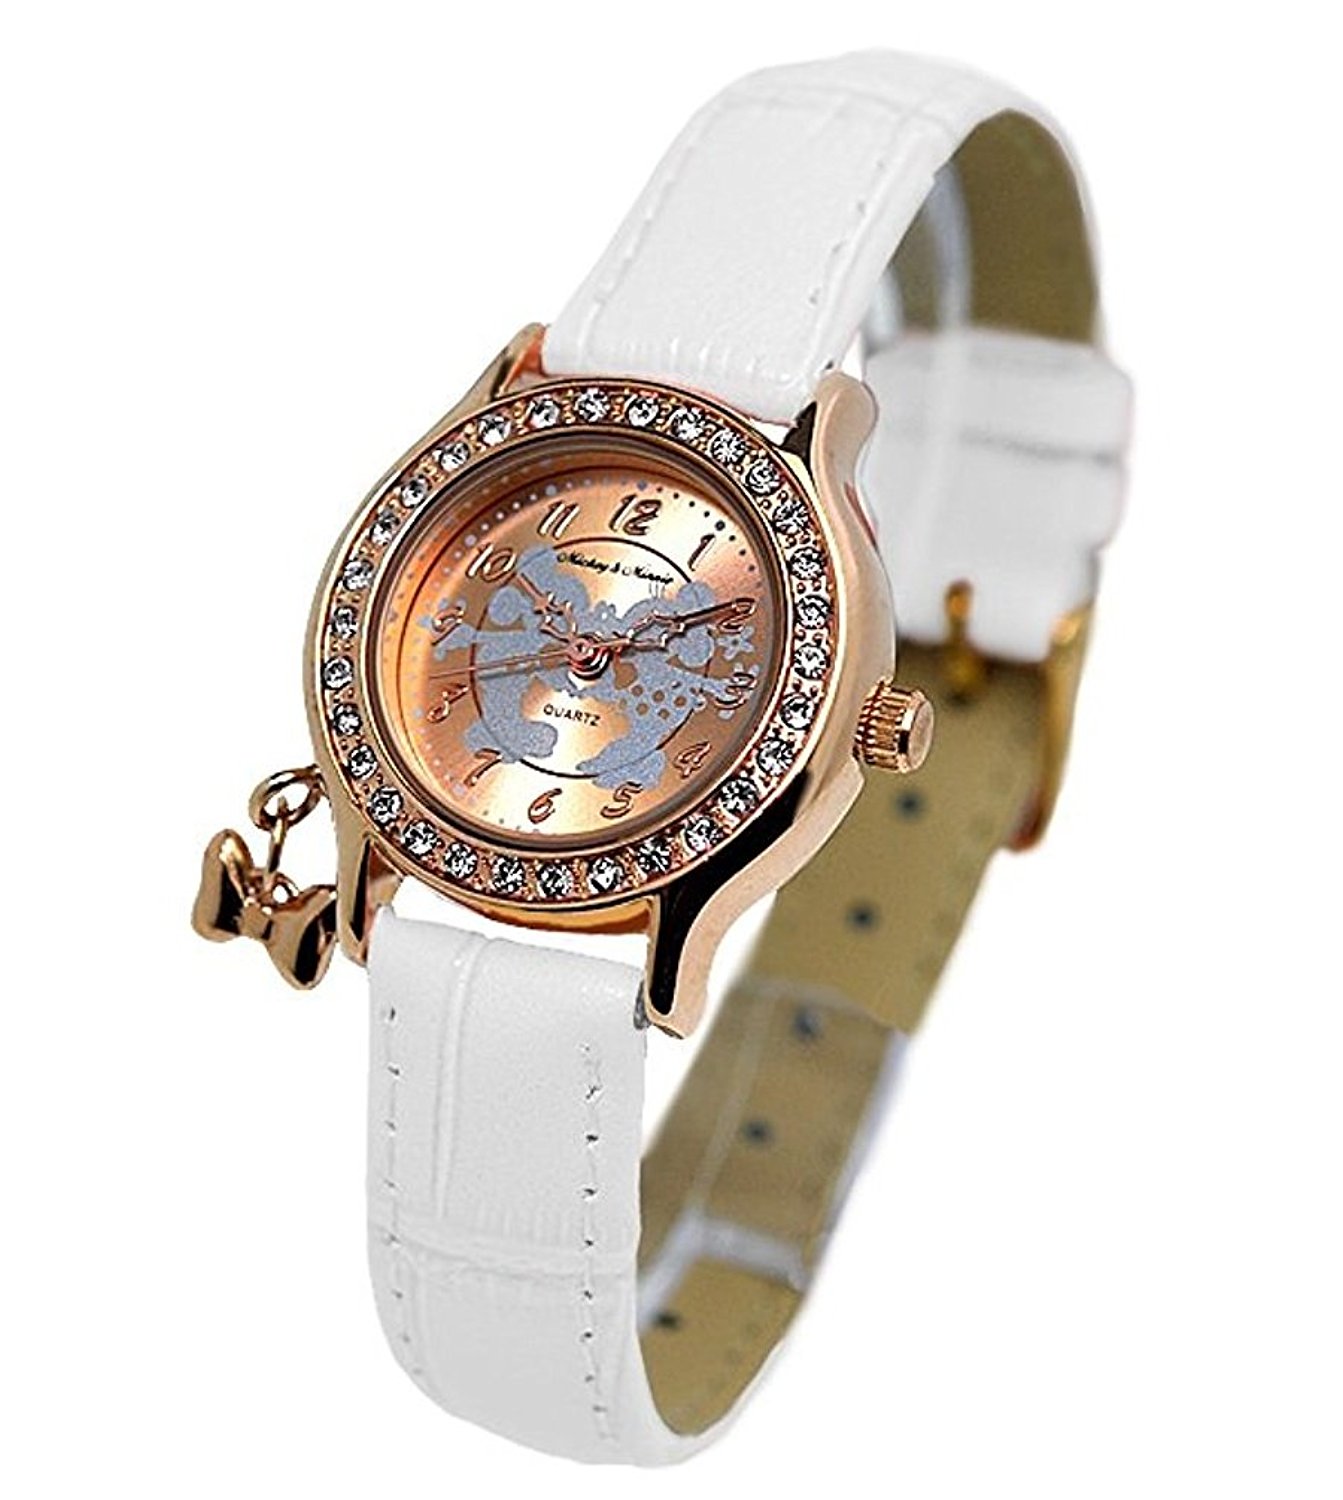 スワロフスキーの人気レディース腕時計12選【プレゼントにもおすすめ】 | ベストプレゼントガイド